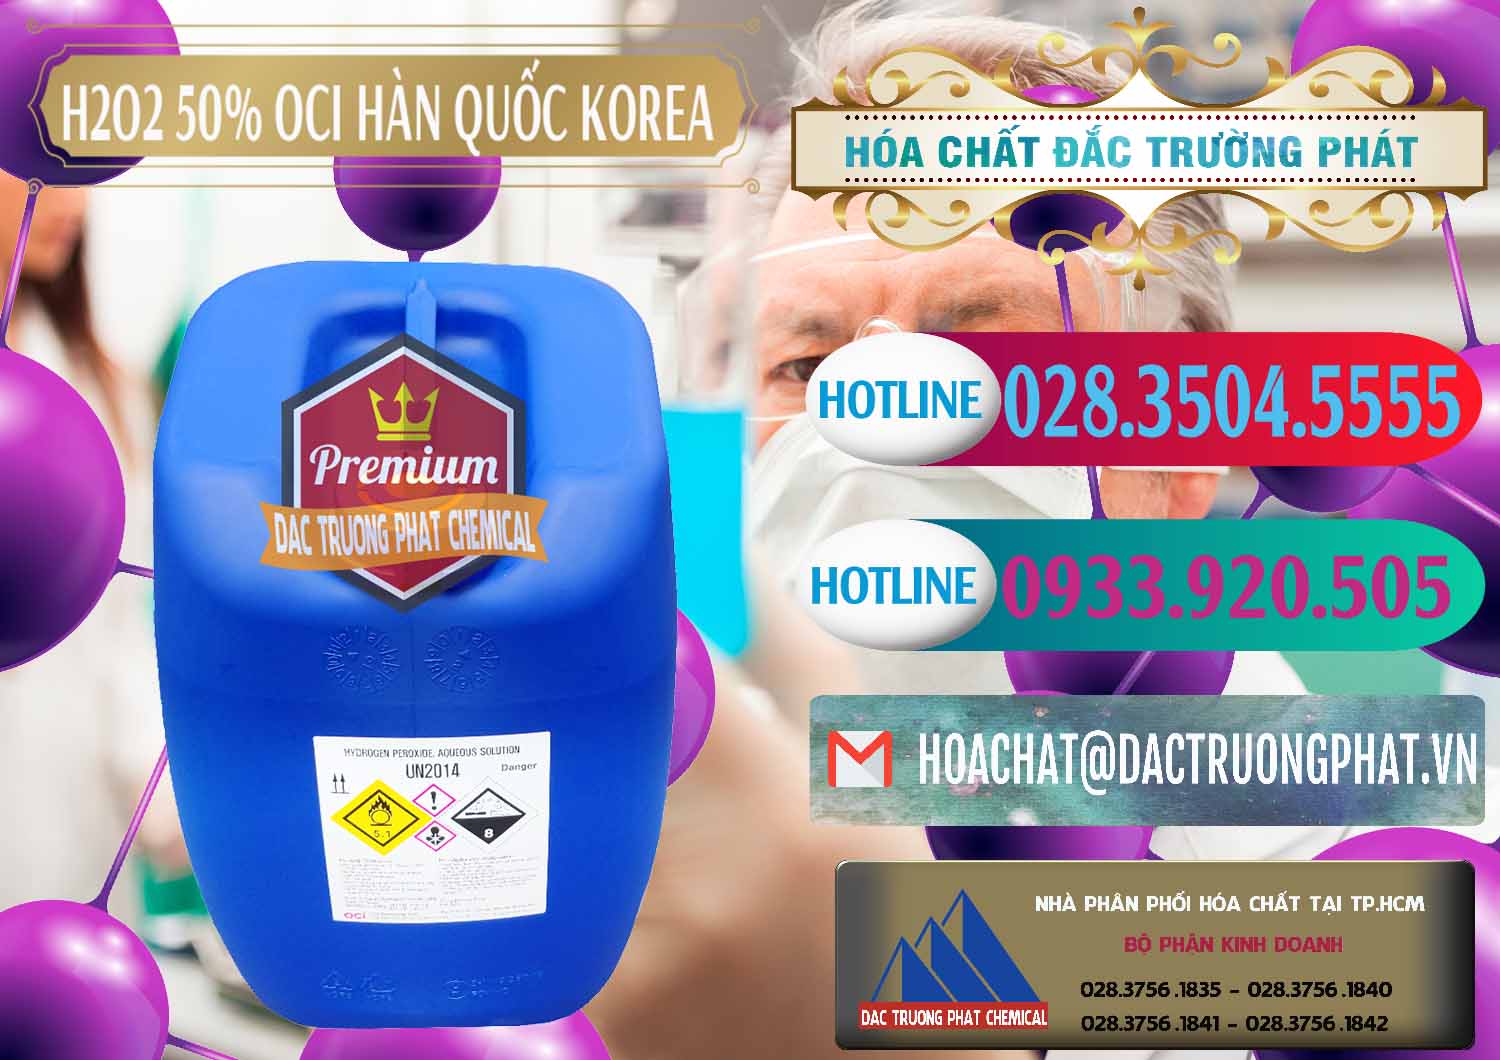 Cty chuyên cung cấp & bán H2O2 - Hydrogen Peroxide 50% OCI Hàn Quốc Korea - 0075 - Nơi cung cấp _ bán hóa chất tại TP.HCM - truongphat.vn